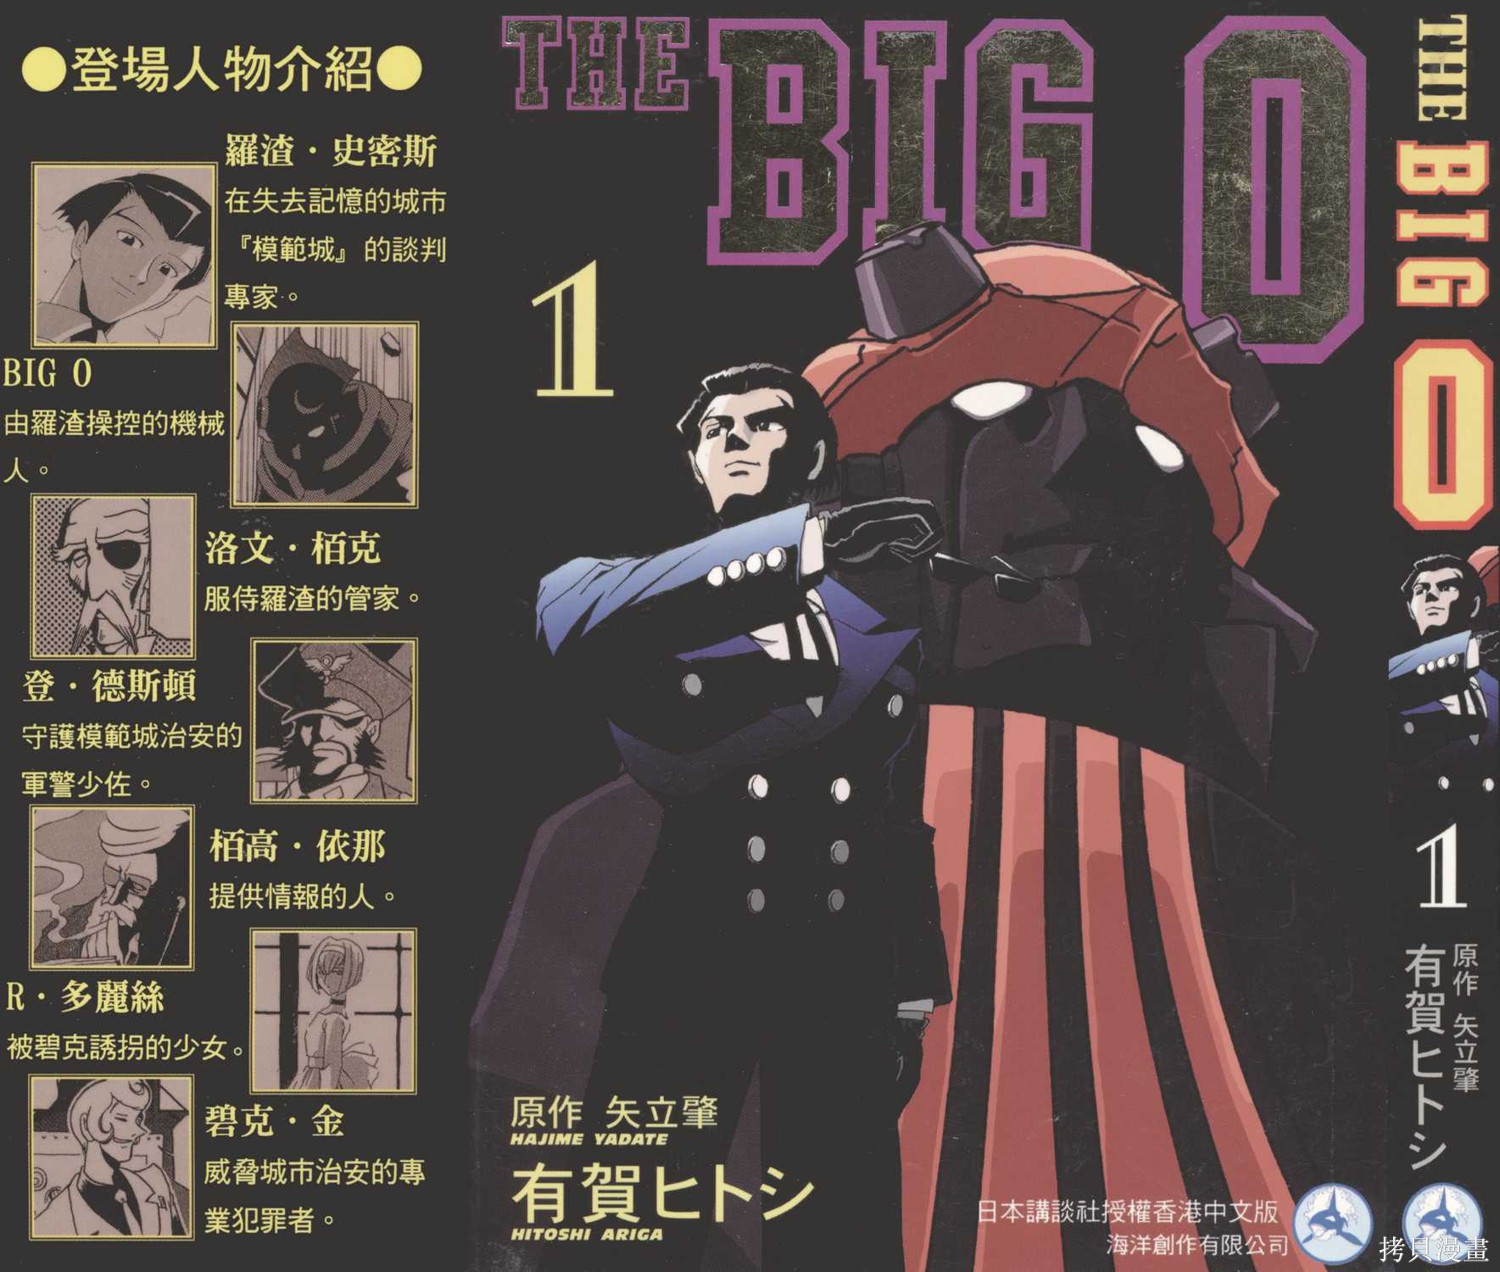 【漫画】【完结】《魅影巨神 THE BIG-O》JPG PDF 百度网盘下载